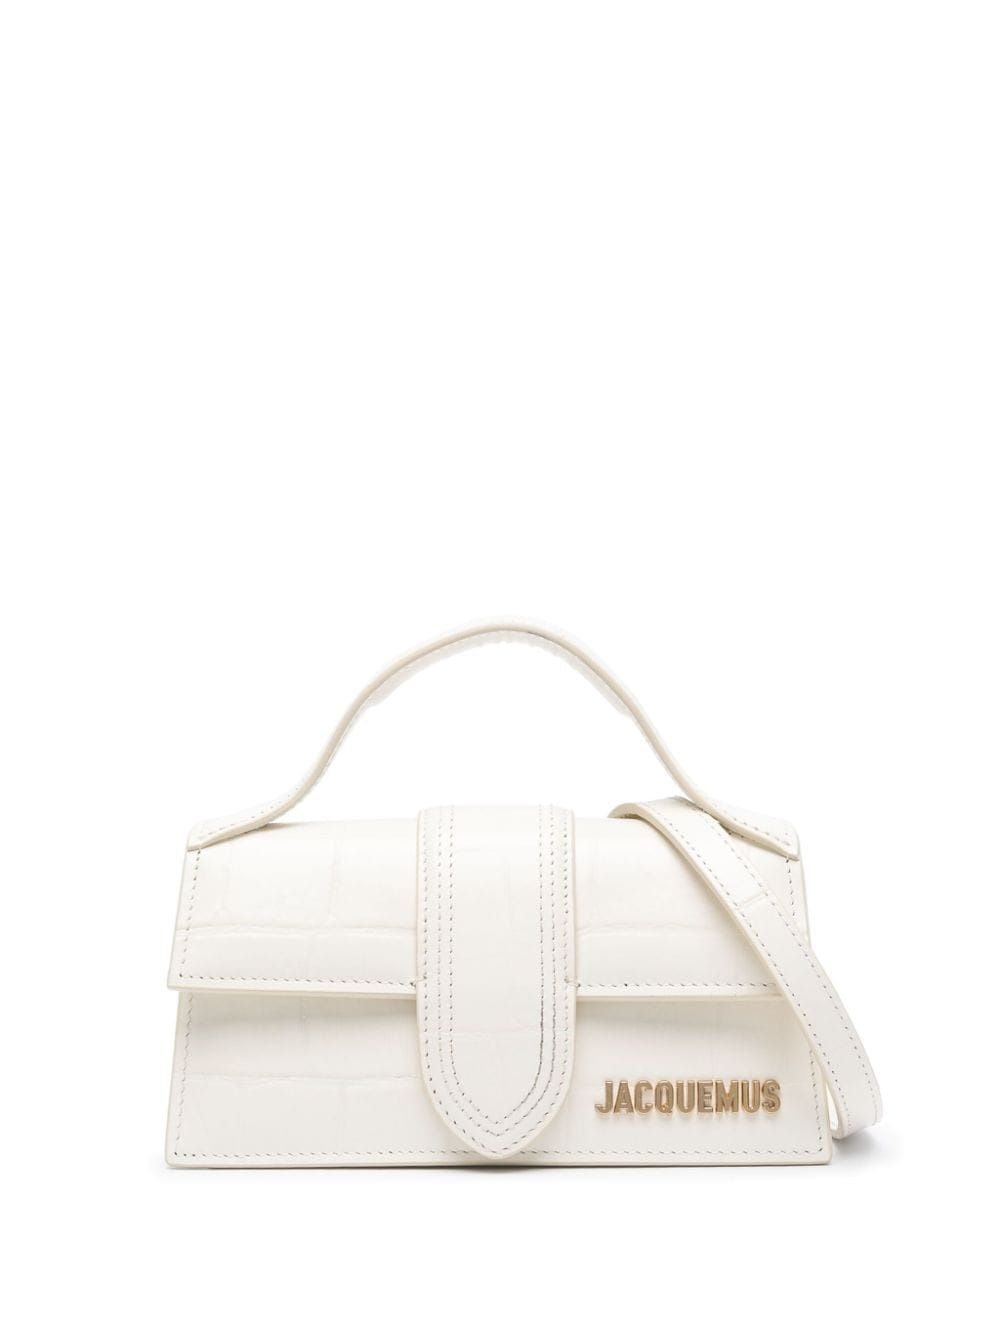 JACQUEMUS Elegant Ivory Leather Handbag for Women